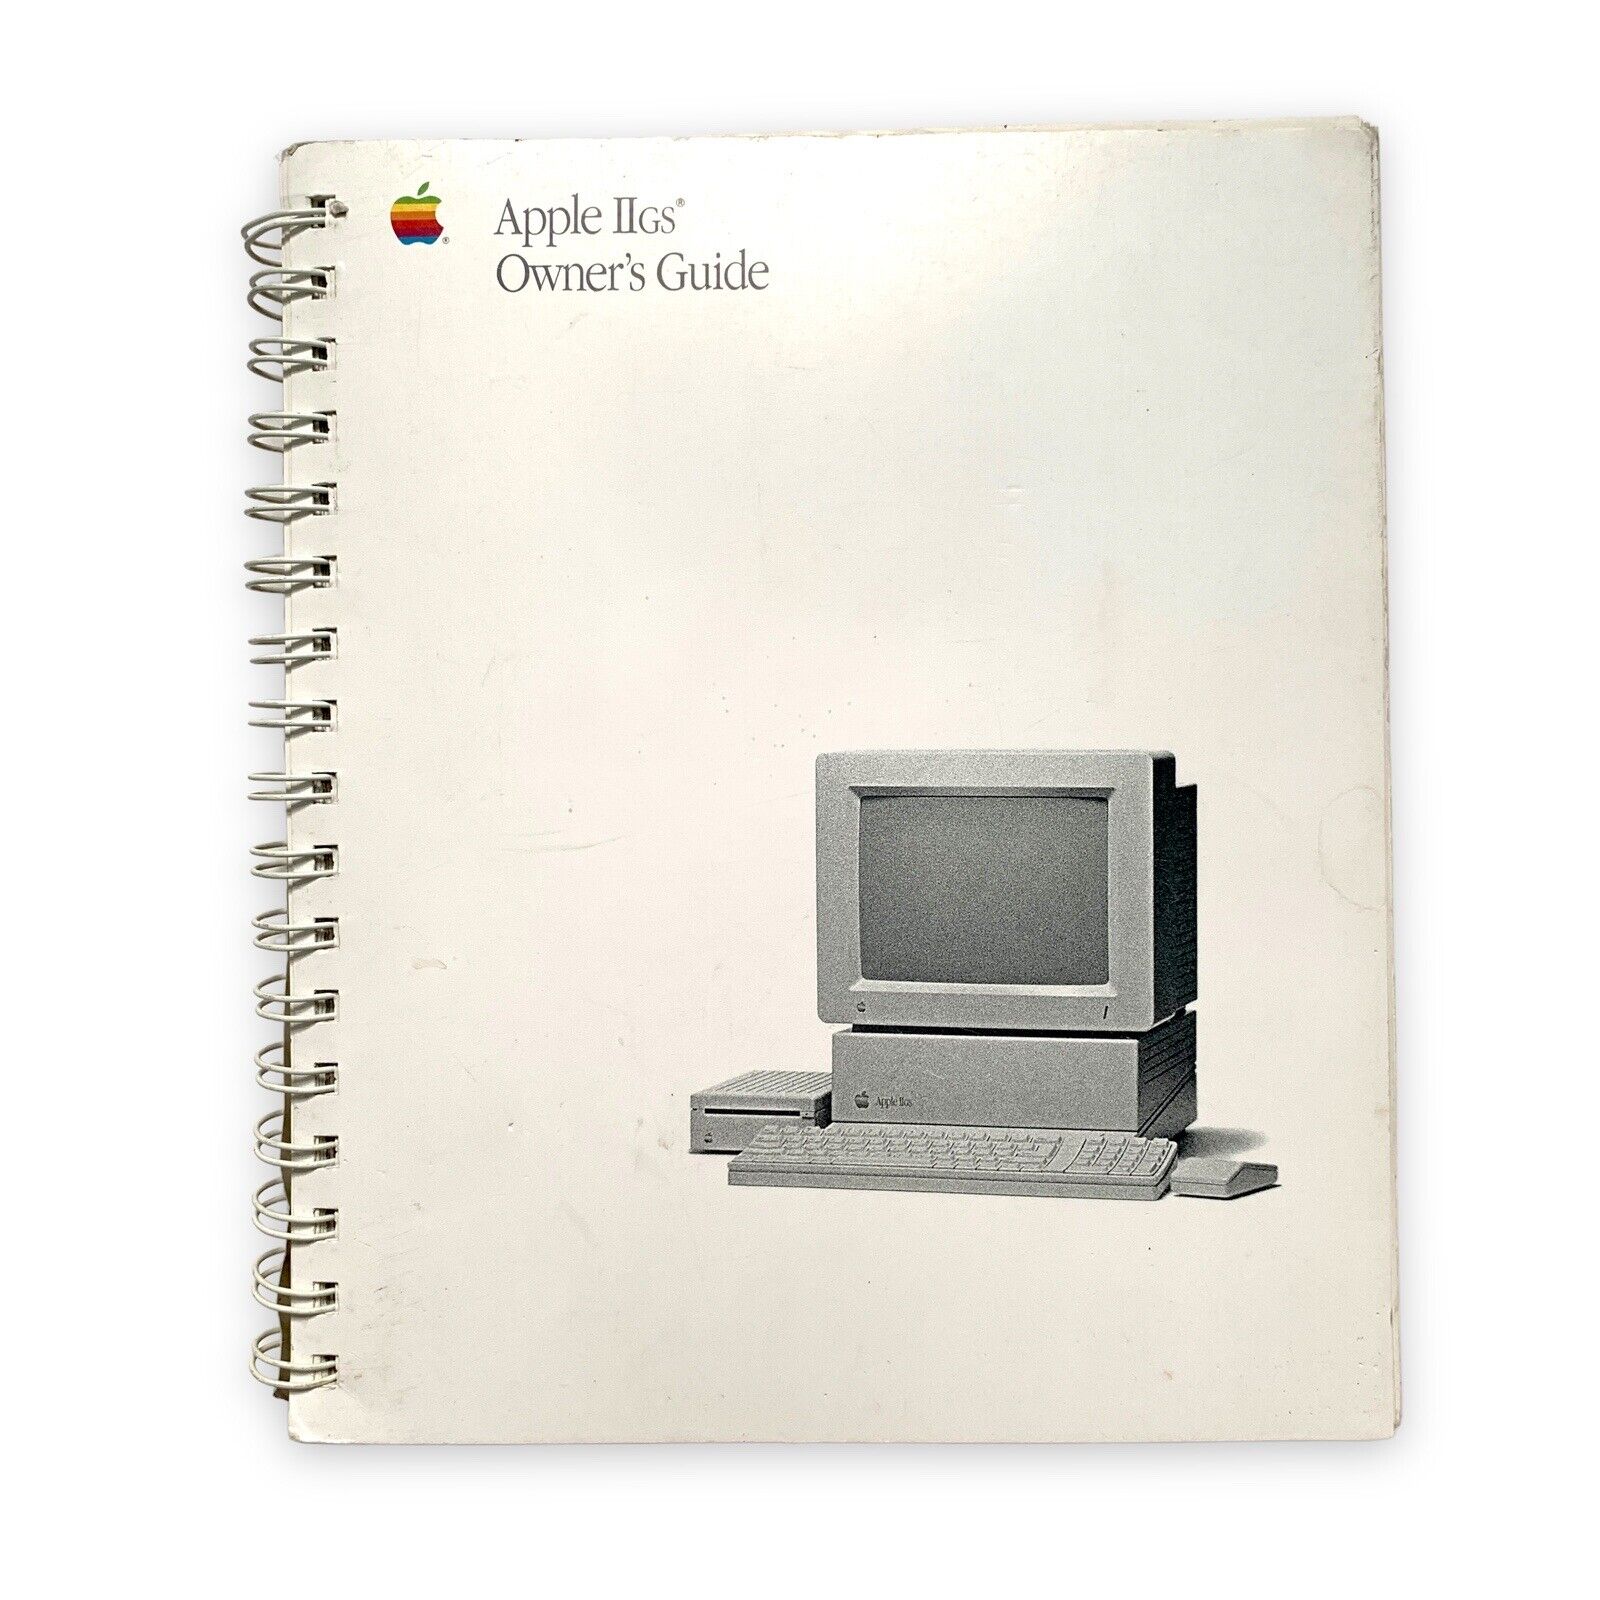 Apple IIgs Owner’s Guide Manual VTG 1988 II gs